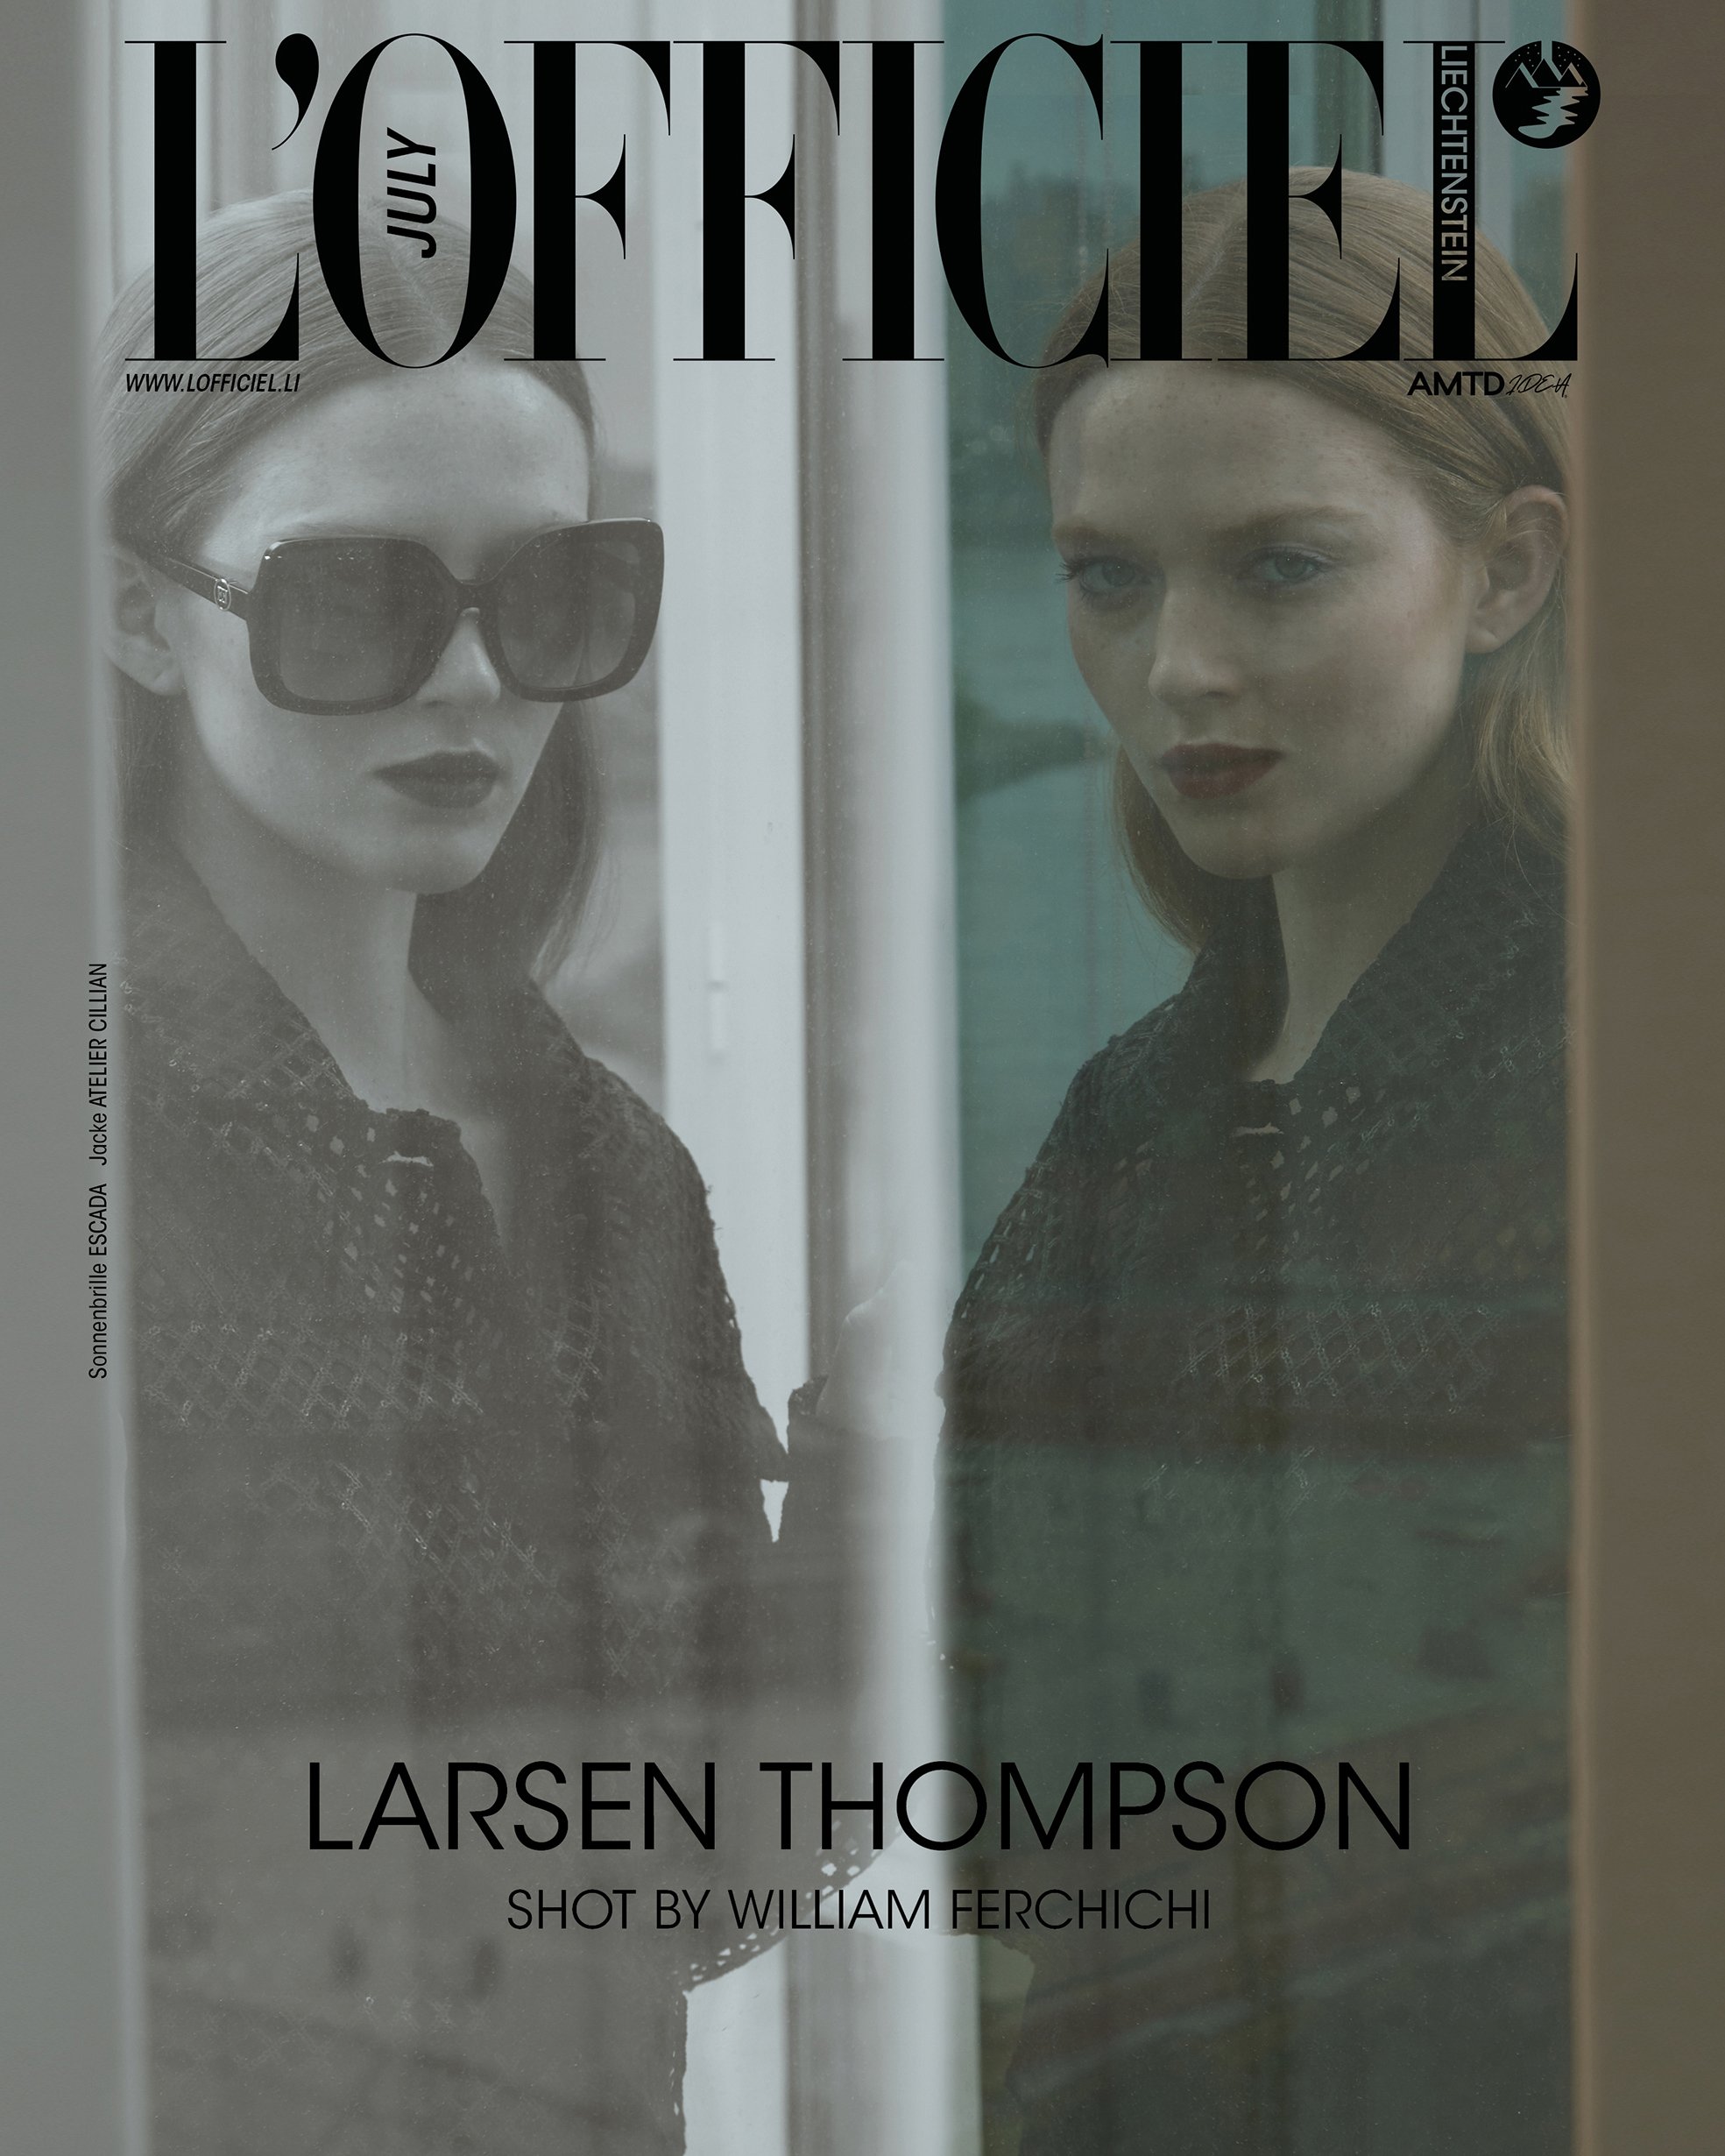 L'Officiel Liechtenstein - Larsen Thompson